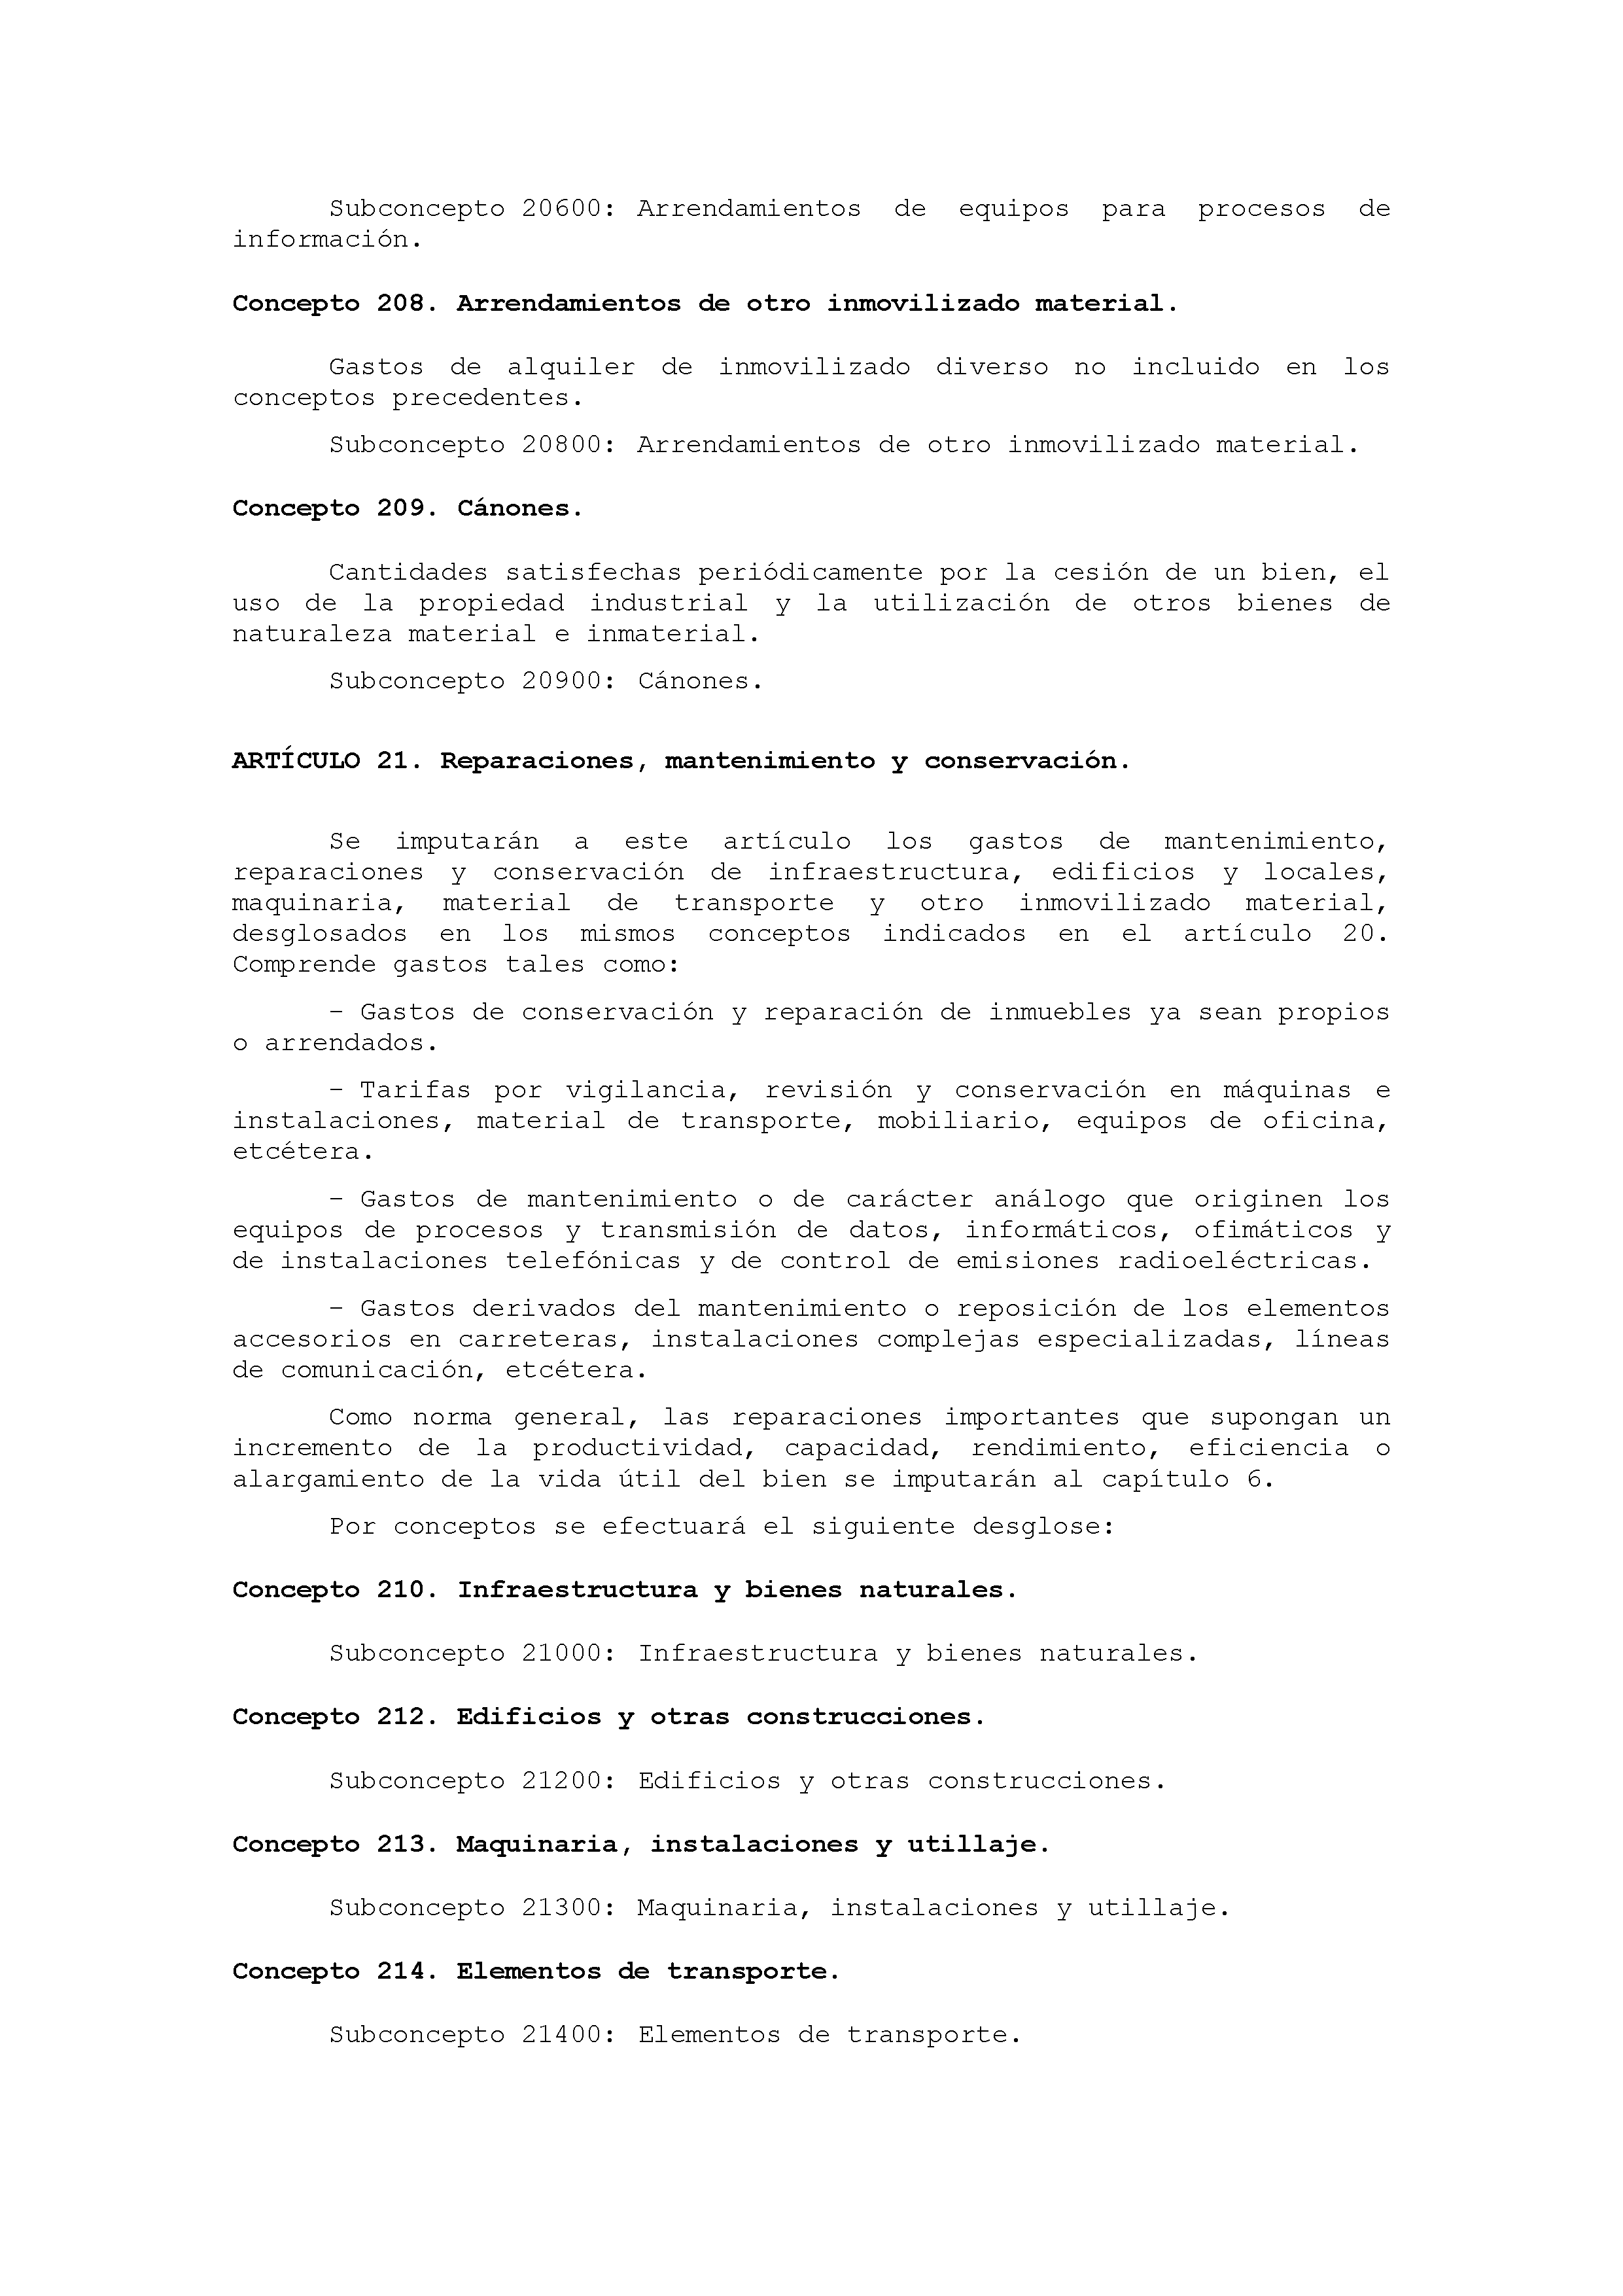 ANEXO IX CÓDIGO DE LA CLASIFICACIÓN ECONÓMICA DE LOS GASTOS PÚBLICOS Pag 16